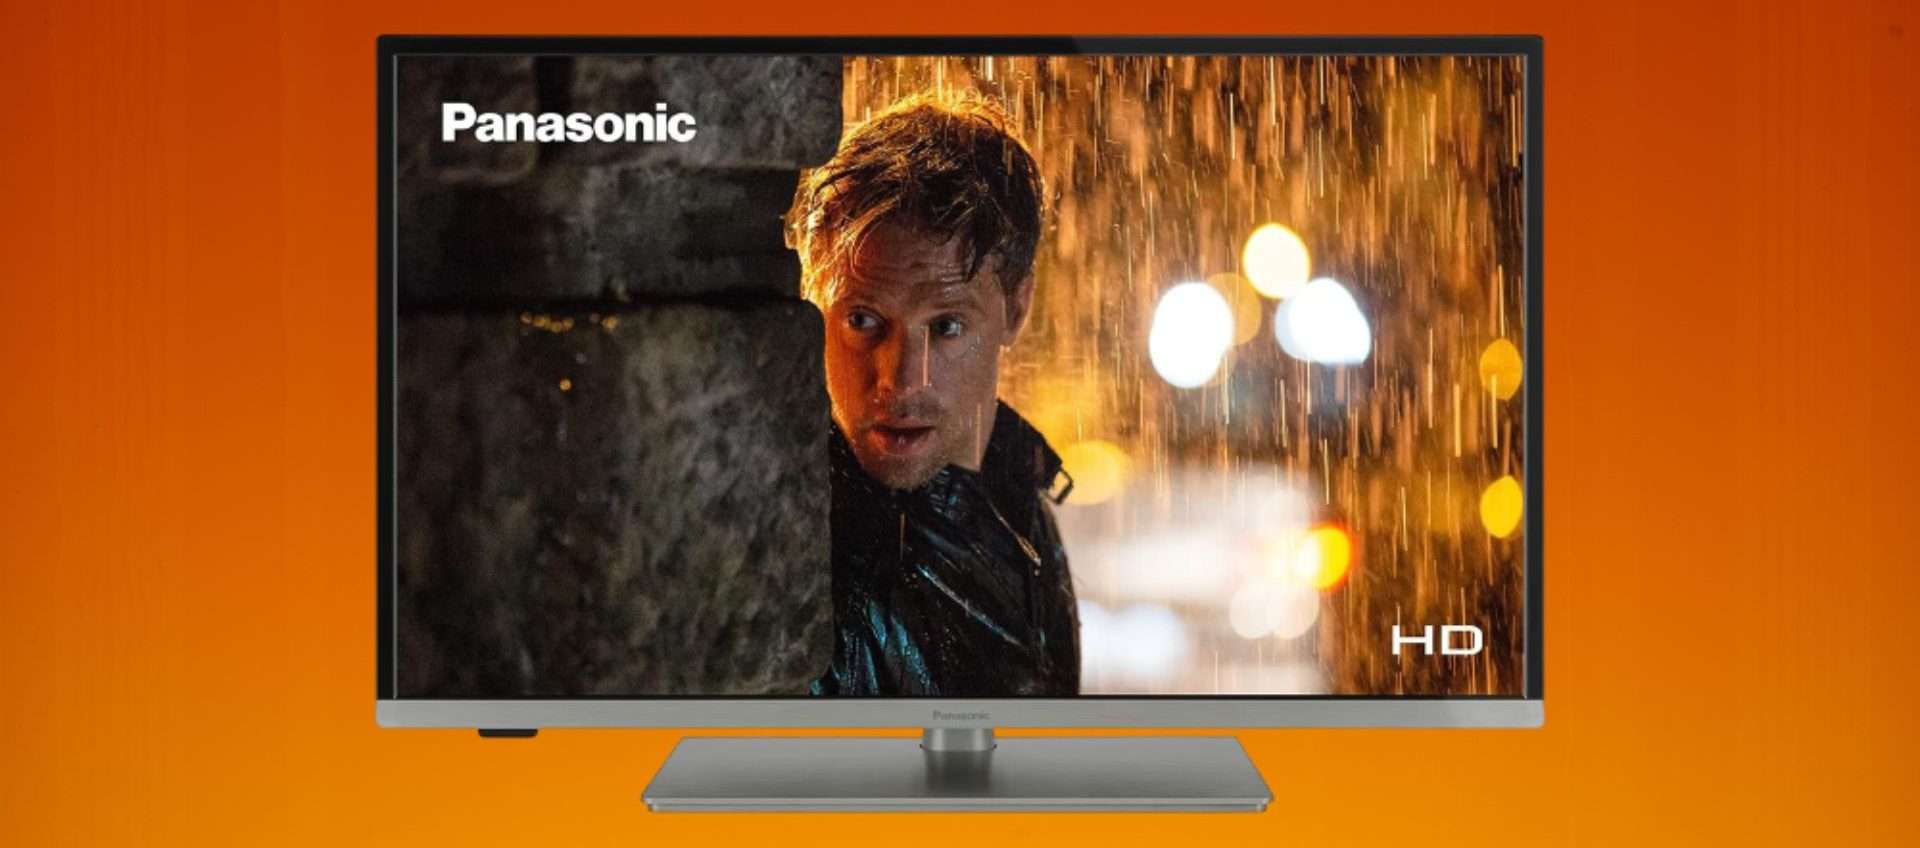 Panasonic 24JS350 in offerta: la MIGLIORE Smart TV sotto i 150€?